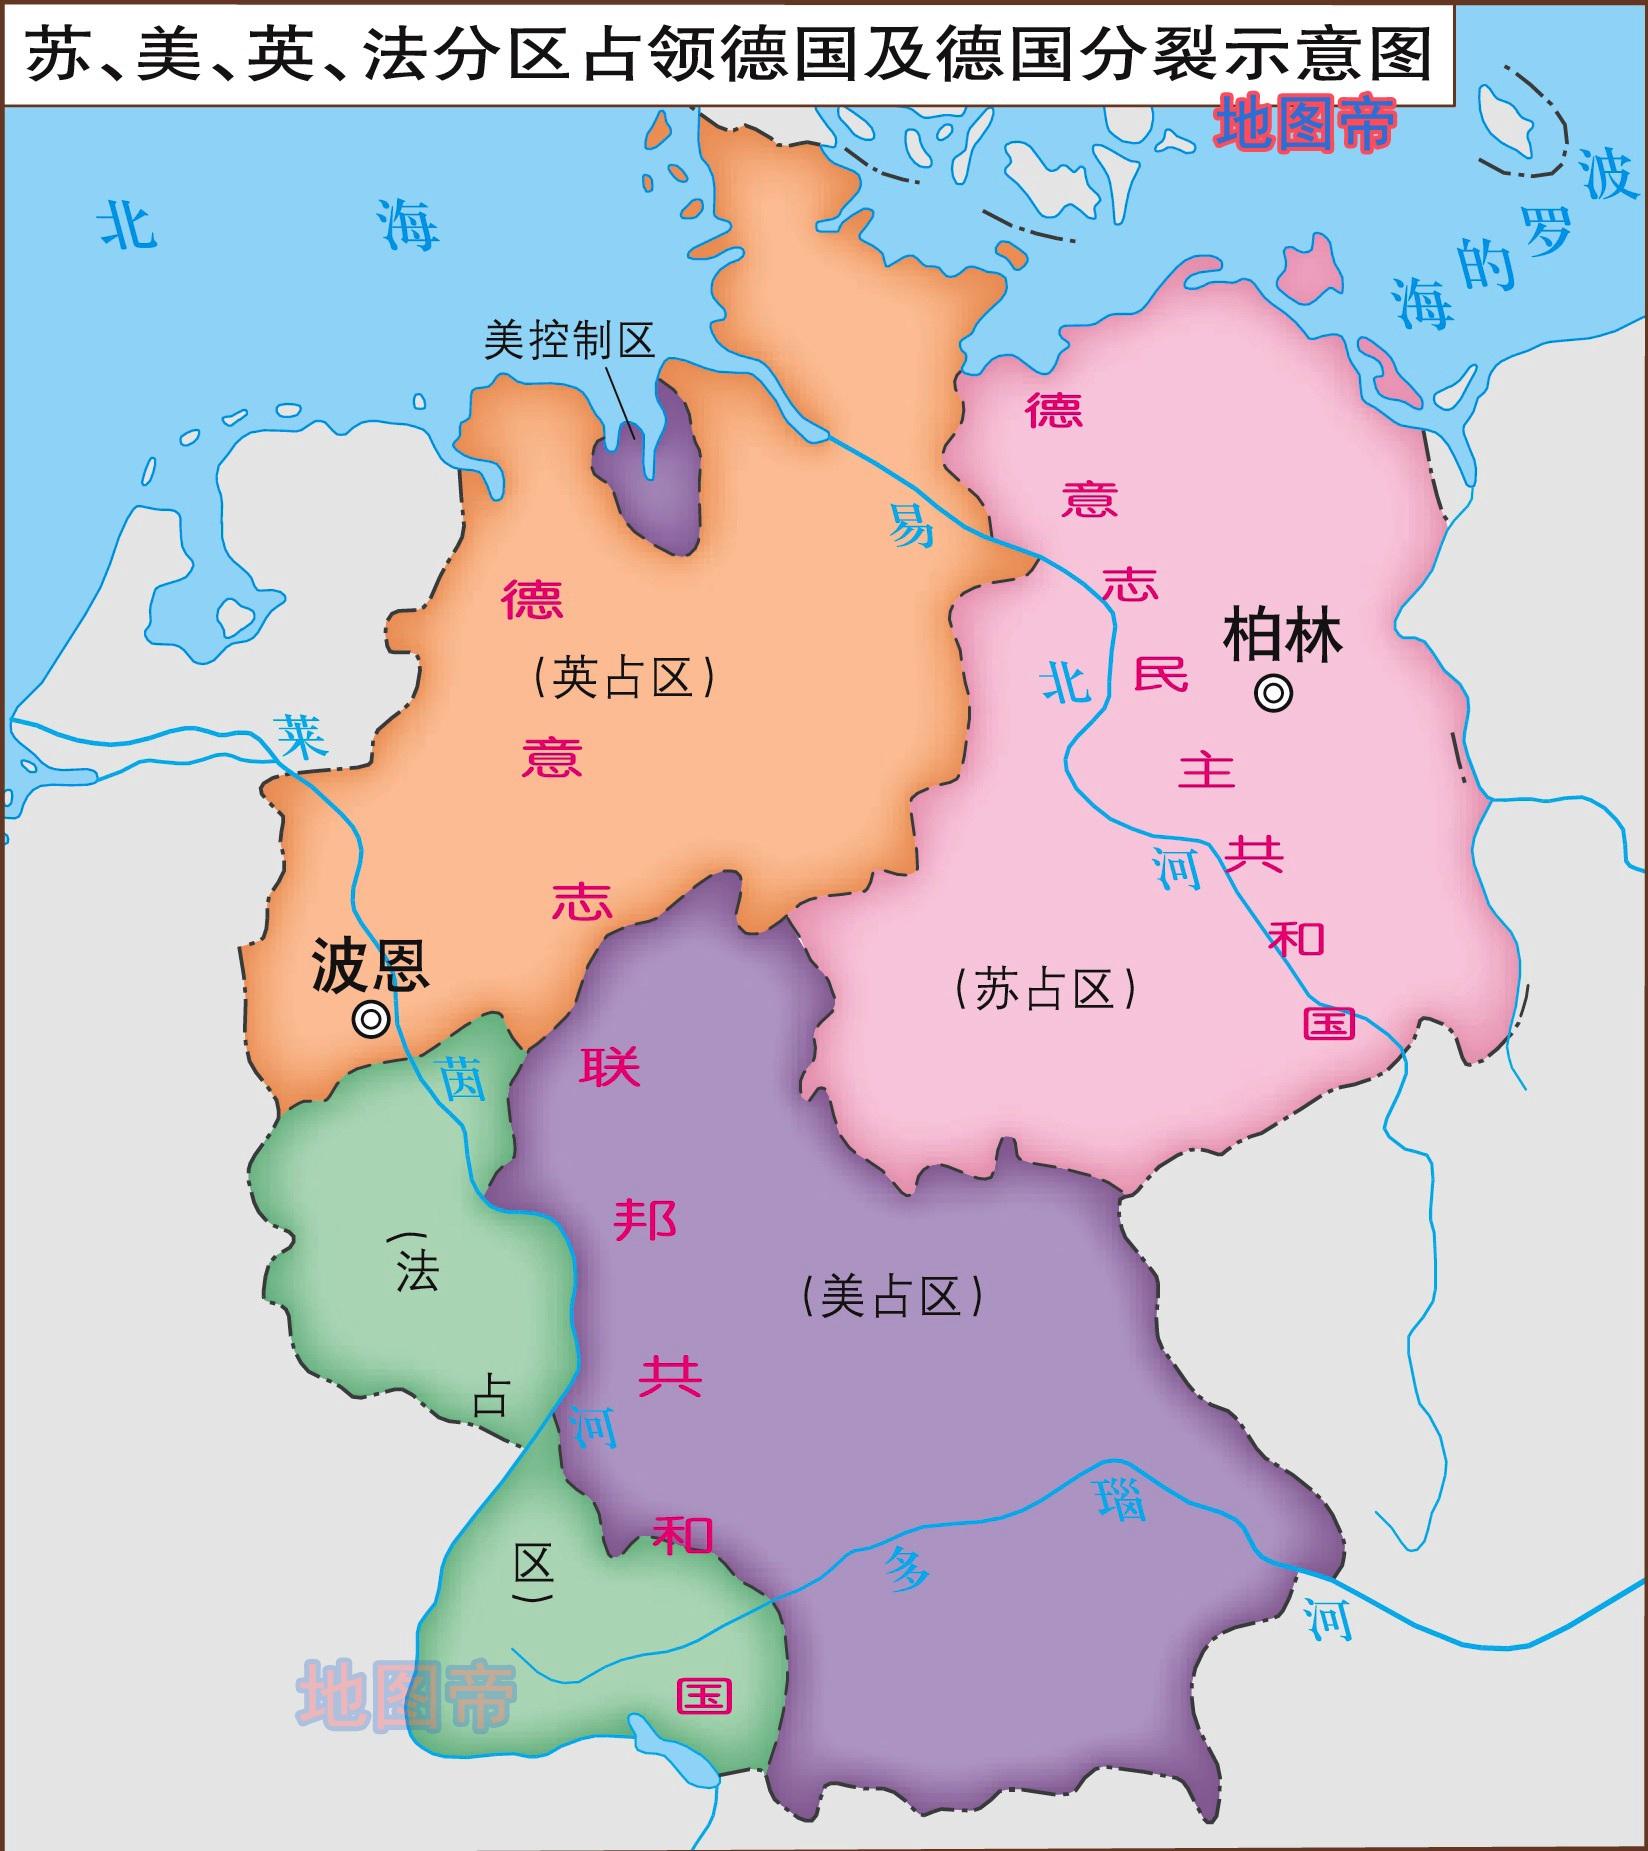 东德即民主德国,是第二次世界大战之后被苏联控制的国家,与之毗邻的